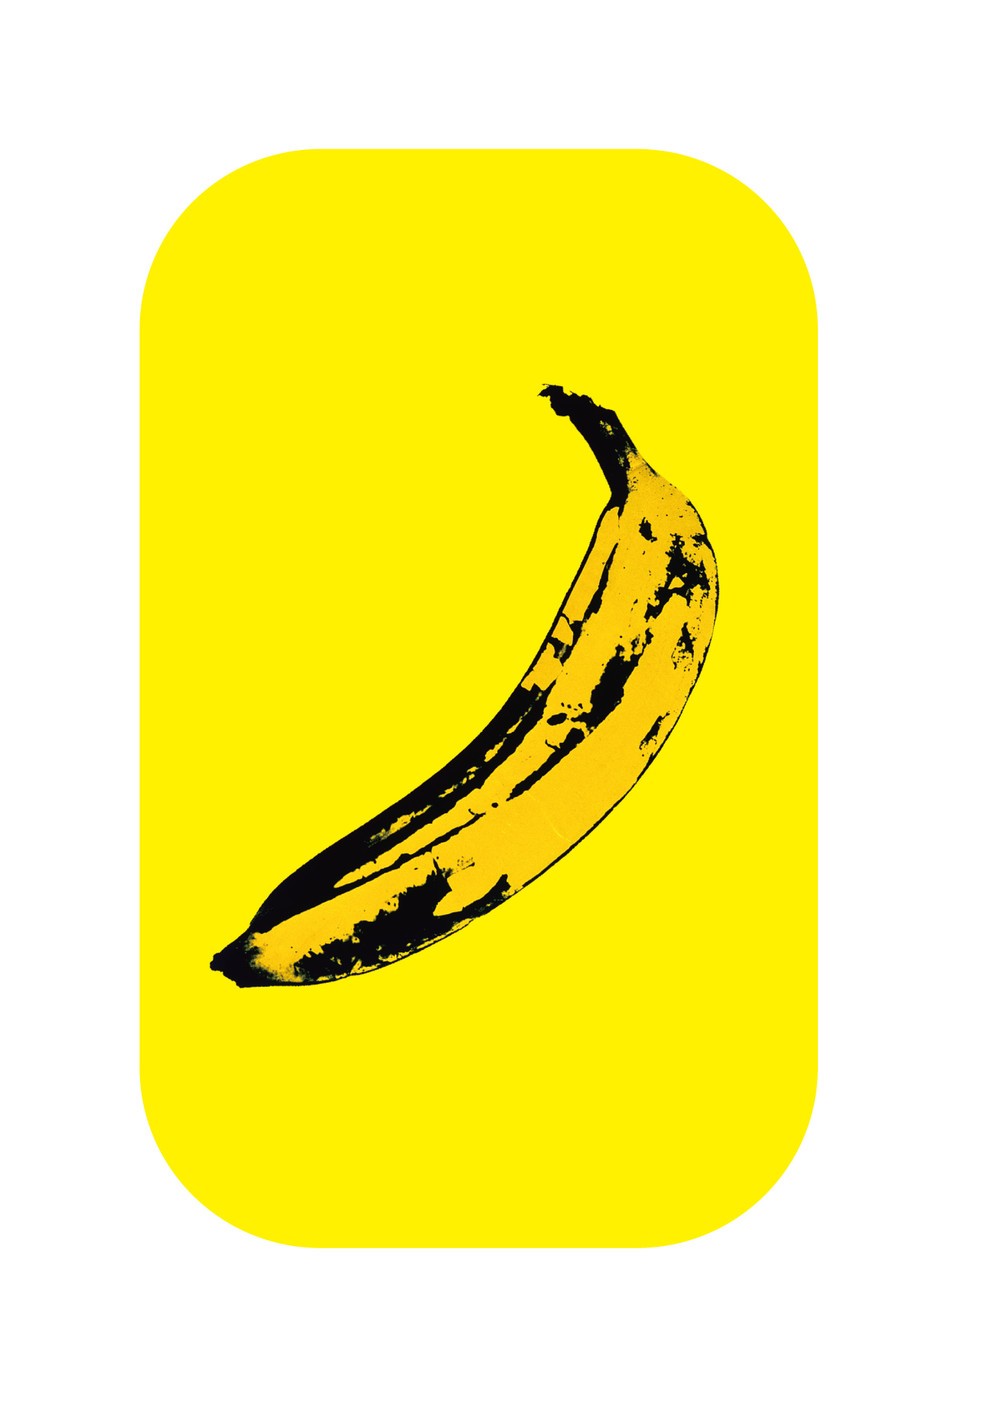 ヴェルヴェット・アンダーグラウンドのアルバムジャケットにもなった「バナナ」の絵